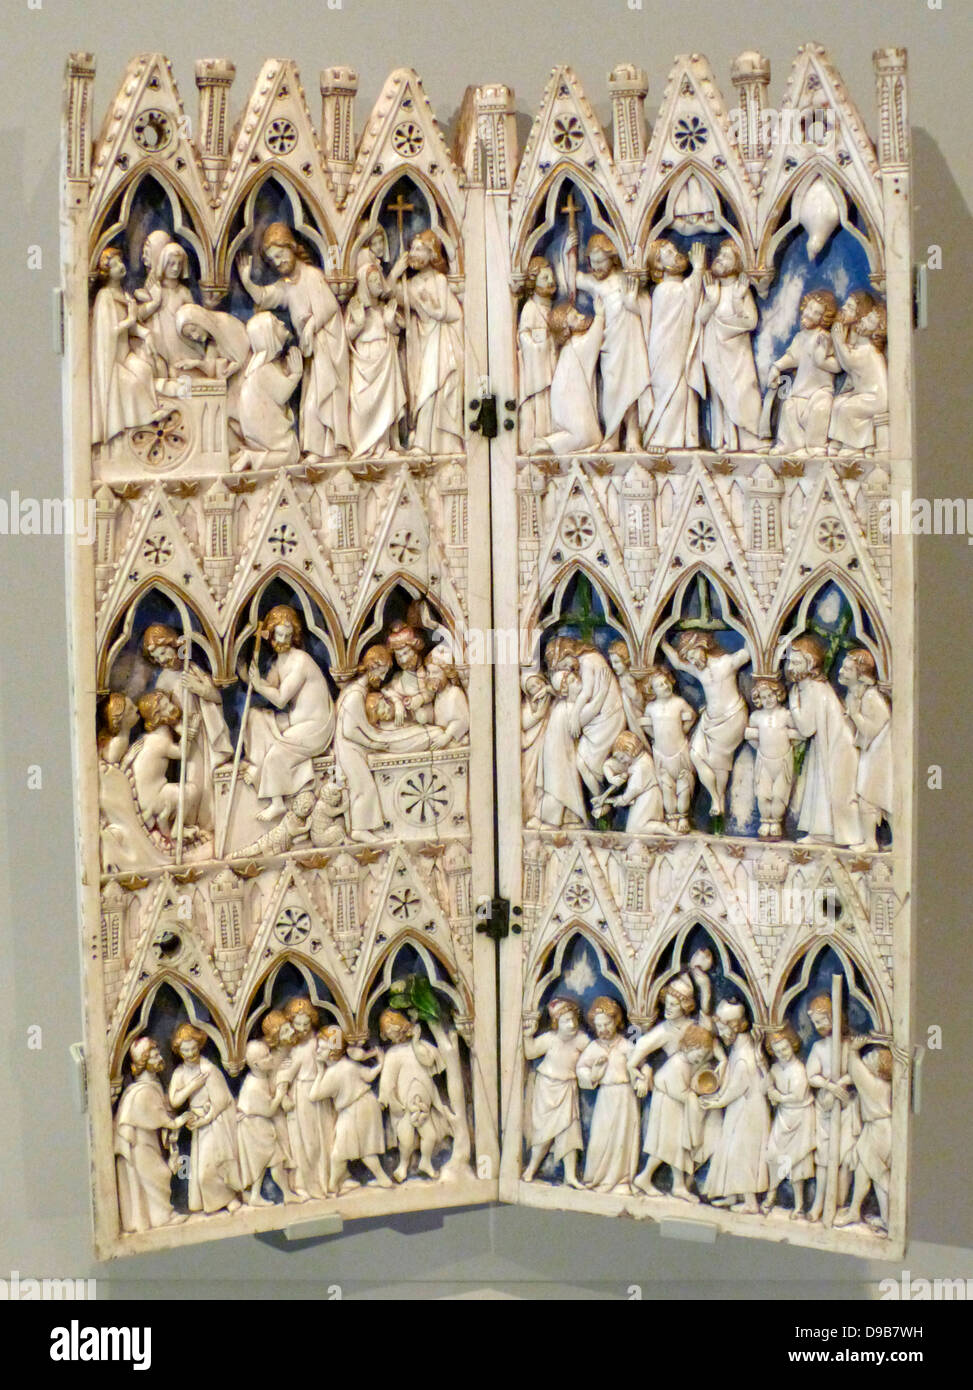 Triptychon mit der Verkündigung und der Krönung der Jungfrau, 1360-70. Dieses Beispiel ist wie eine kleine gotische Gebäude und seiner zentralen Arch ist ähnlich wie bei einem Torbogen in St Mark's Basilika, Venedig. Das Hauptbild zeigt Christus, der Krönung der Jungfrau Maria als Königin des Himmels. Stockfoto